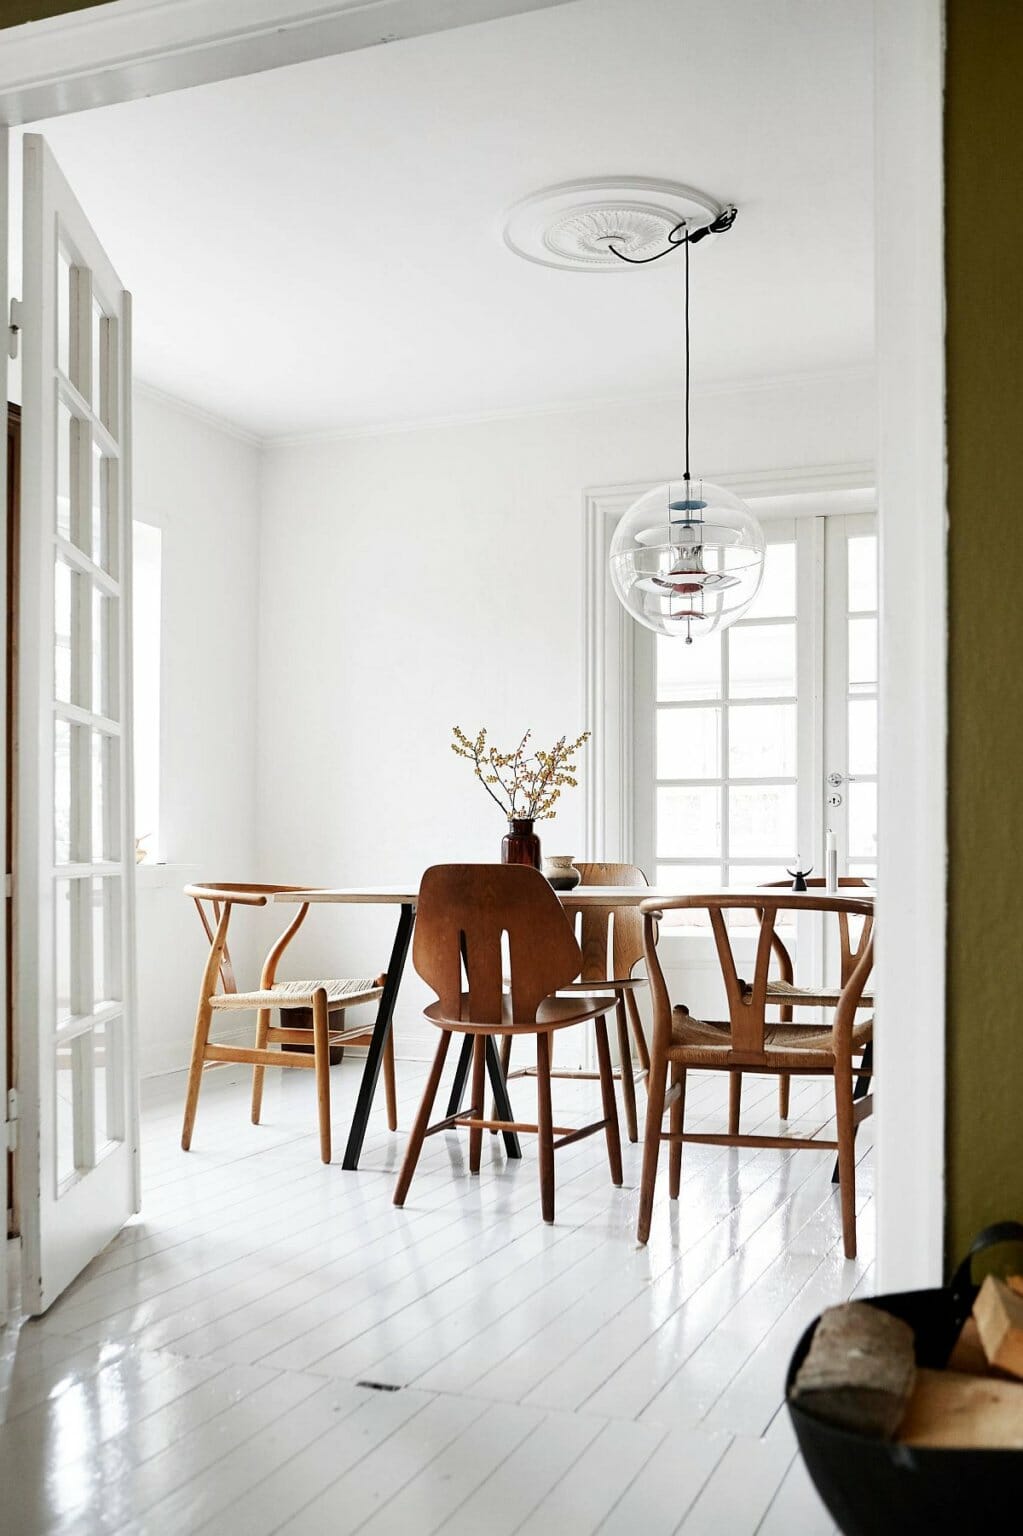 Phòng ăn phong cách scandinavian sáng bóng và tràn ngập ánh sáng tự nhiên. Bộ bàn ghế ăn bằng gỗ nâu tạo cảm giác ấm áp, thân thiện.